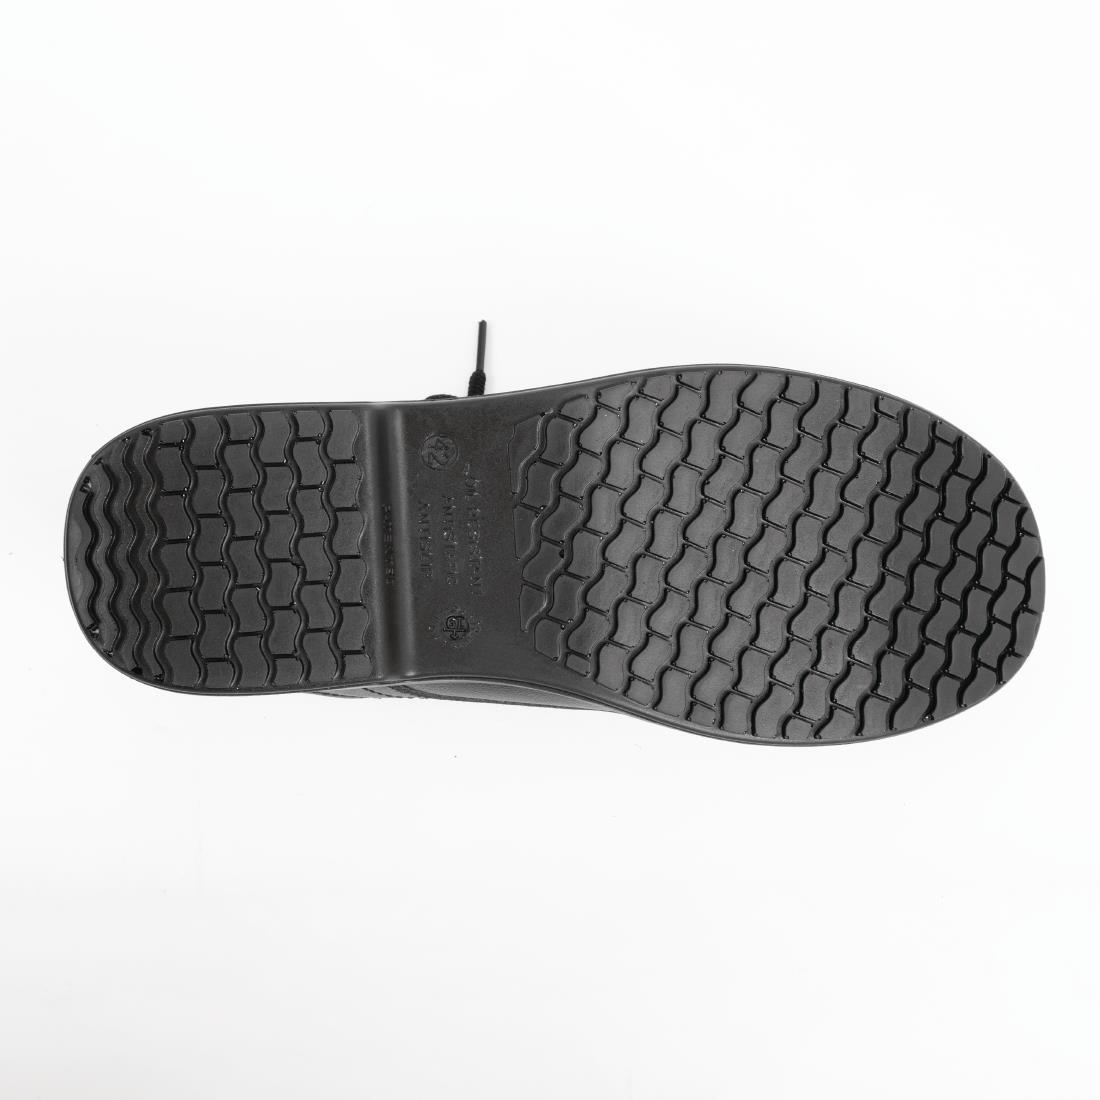 Slipbuster Basic Toe Cap Safety Shoes Black 41 - BB497-41  - 2